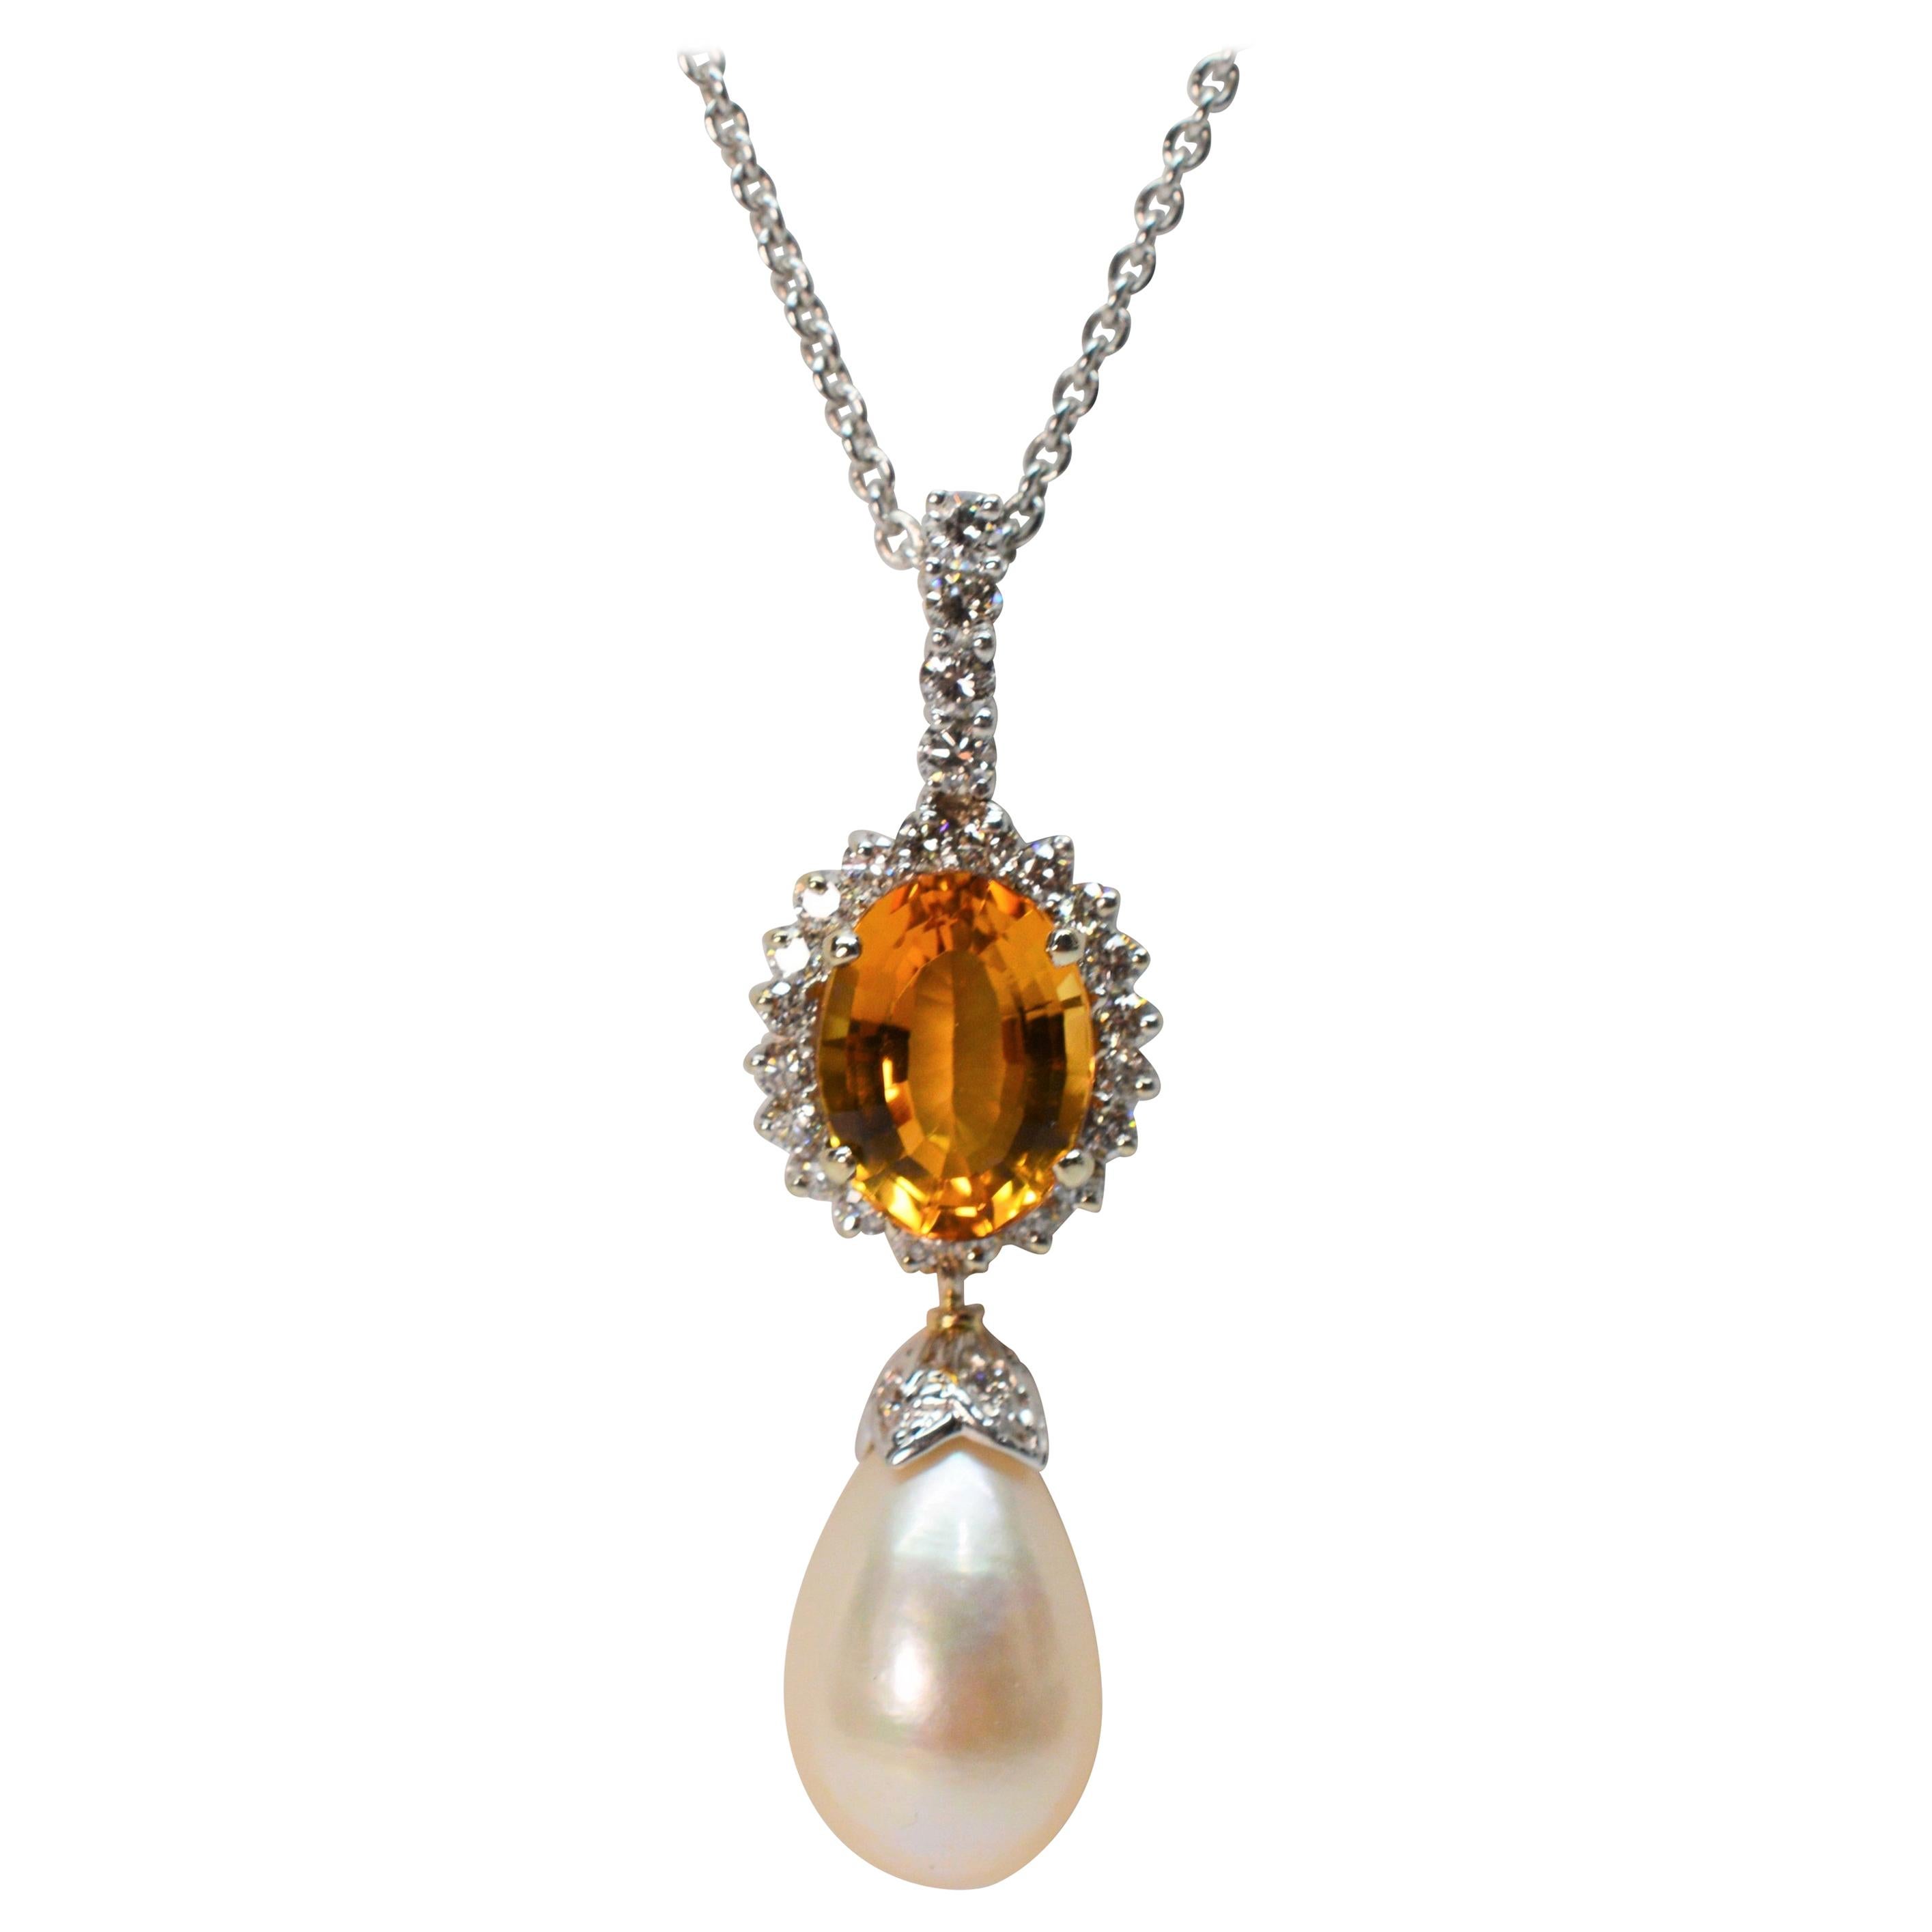 Collier pendentif en or blanc 14 carats avec perles et citrine en forme de goutte d'eau 